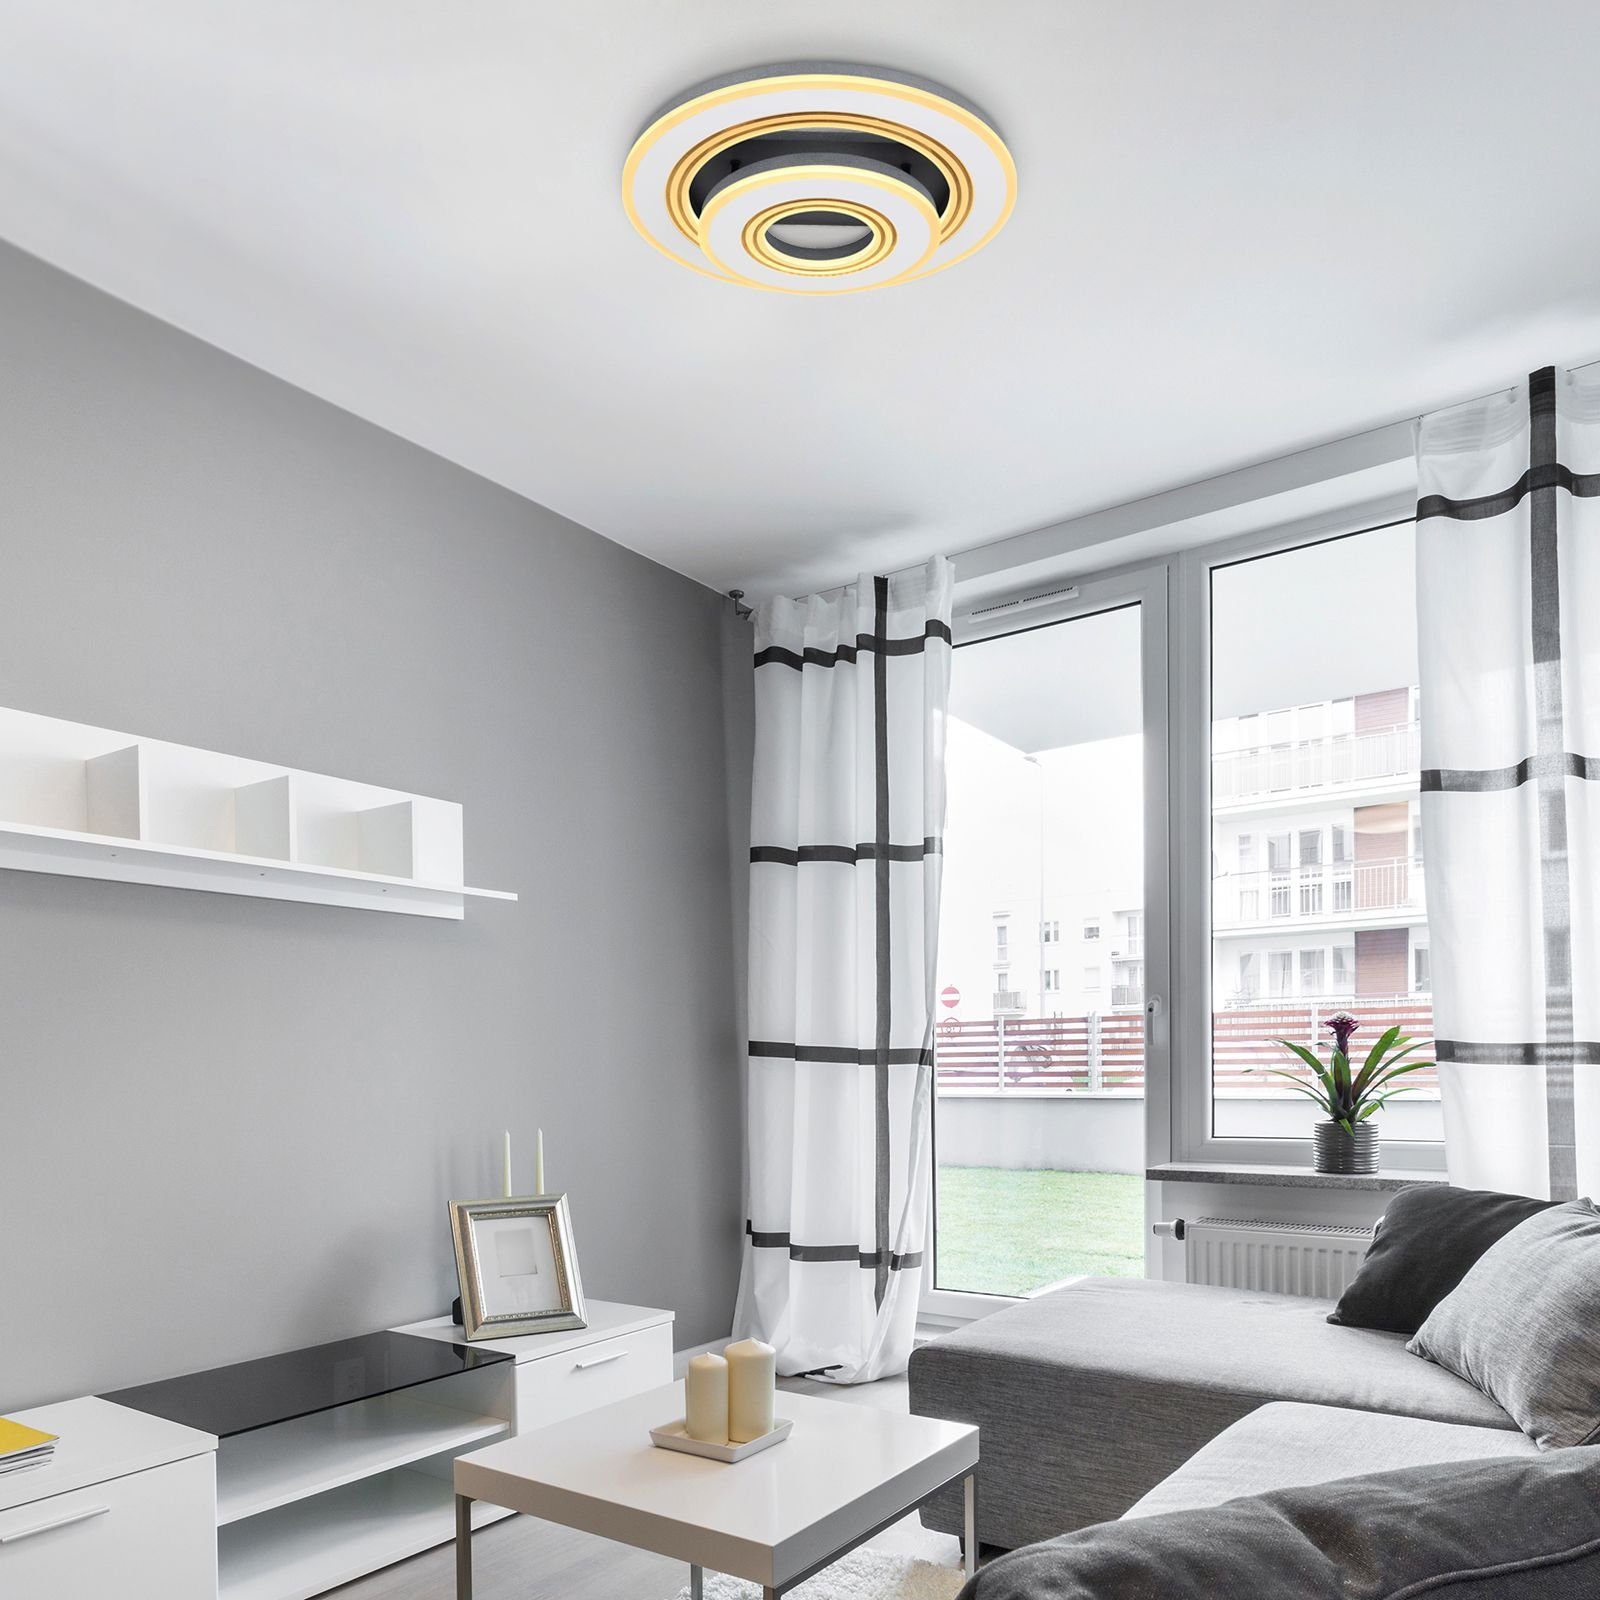 GLOBO Deckenlampe Fernbedienung Wohnzimmer LED Deckenleuchte Globo Deckenleuchte Dimmbar